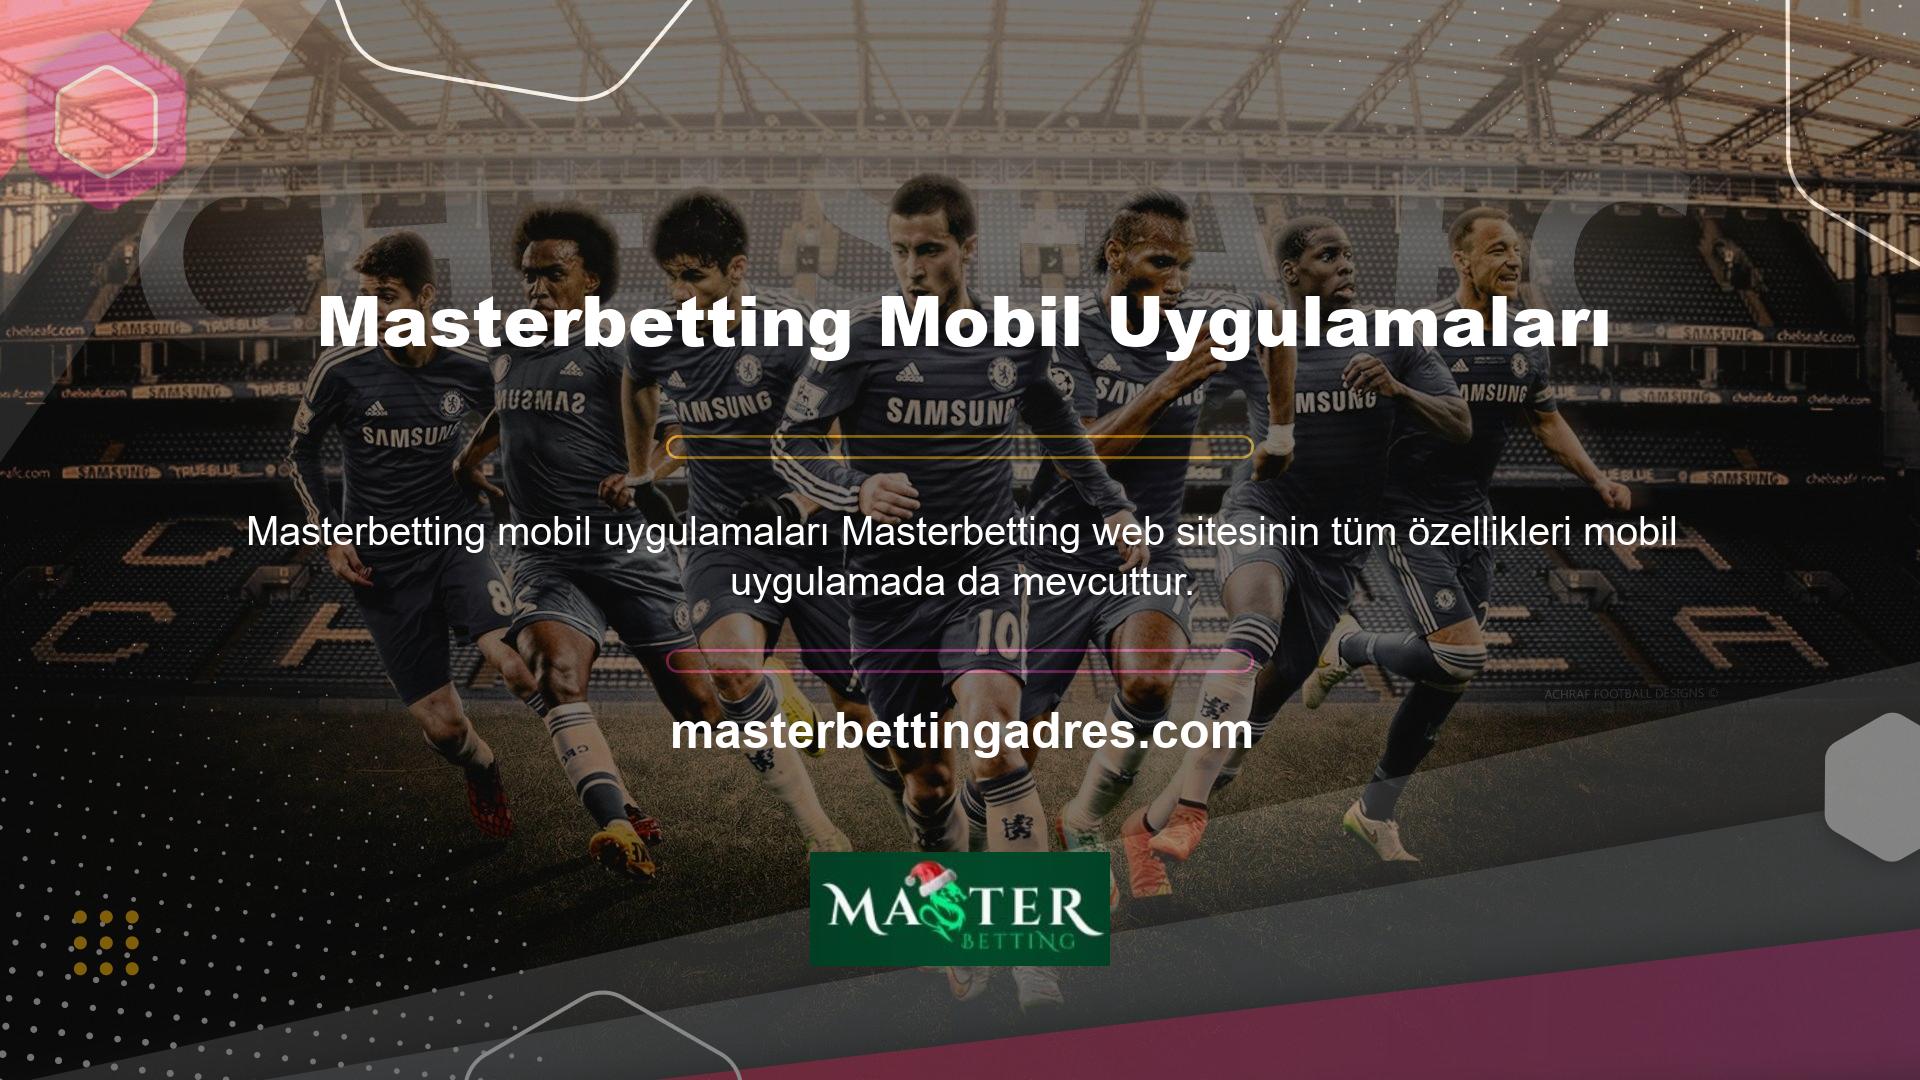 Normalde Masterbetting web sitesinde bulunan Masterbetting TV özelliklerine mobil uygulama üzerinden kalıcı olarak erişilebilir